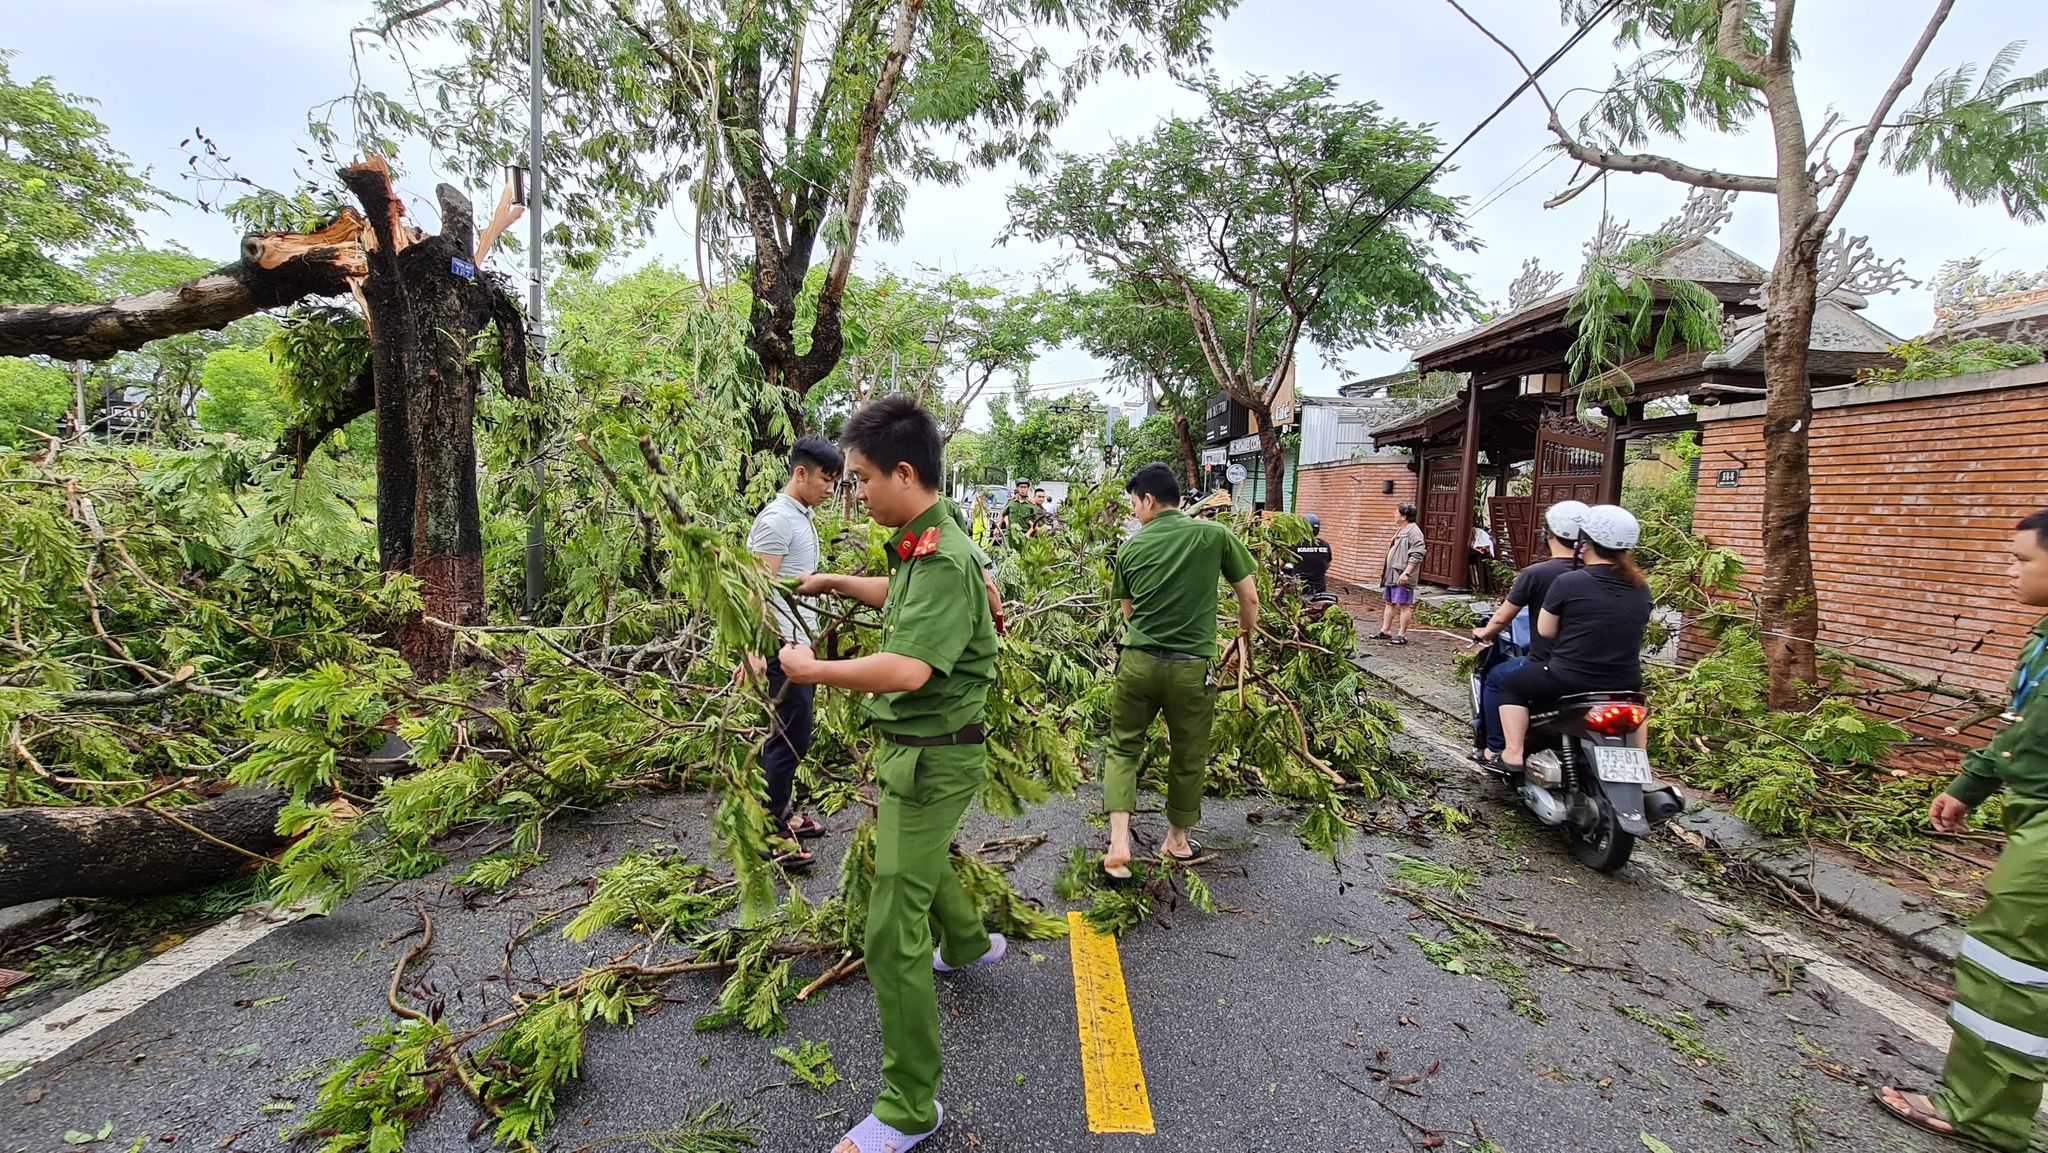 100% quân số đã được Ban Chỉ huy Công an thành phố Huế huy động để phối hợp cùng các cơ quan ban ngành trên địa bàn khắc phục hậu quả do bão số 5 gây ra.